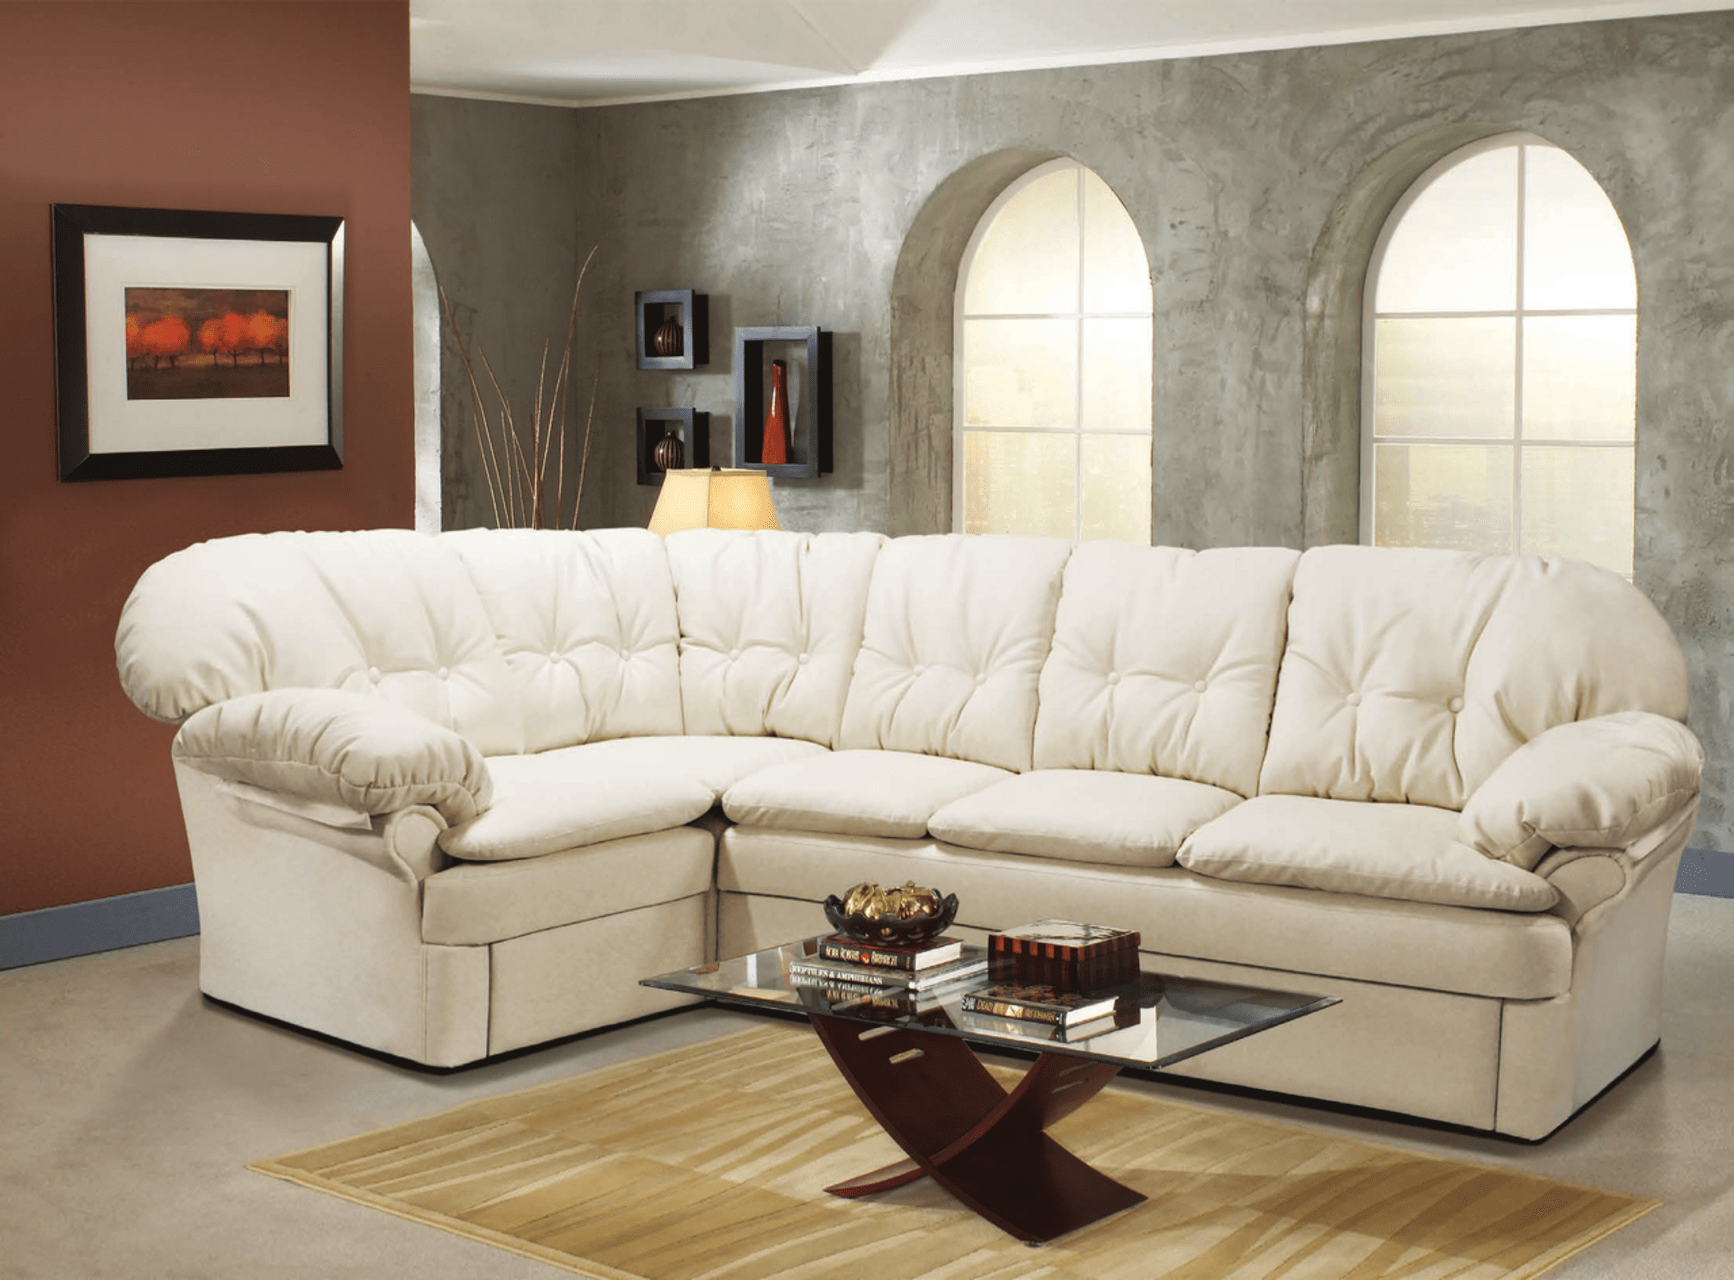 Высокий шикарный диван белого цвета